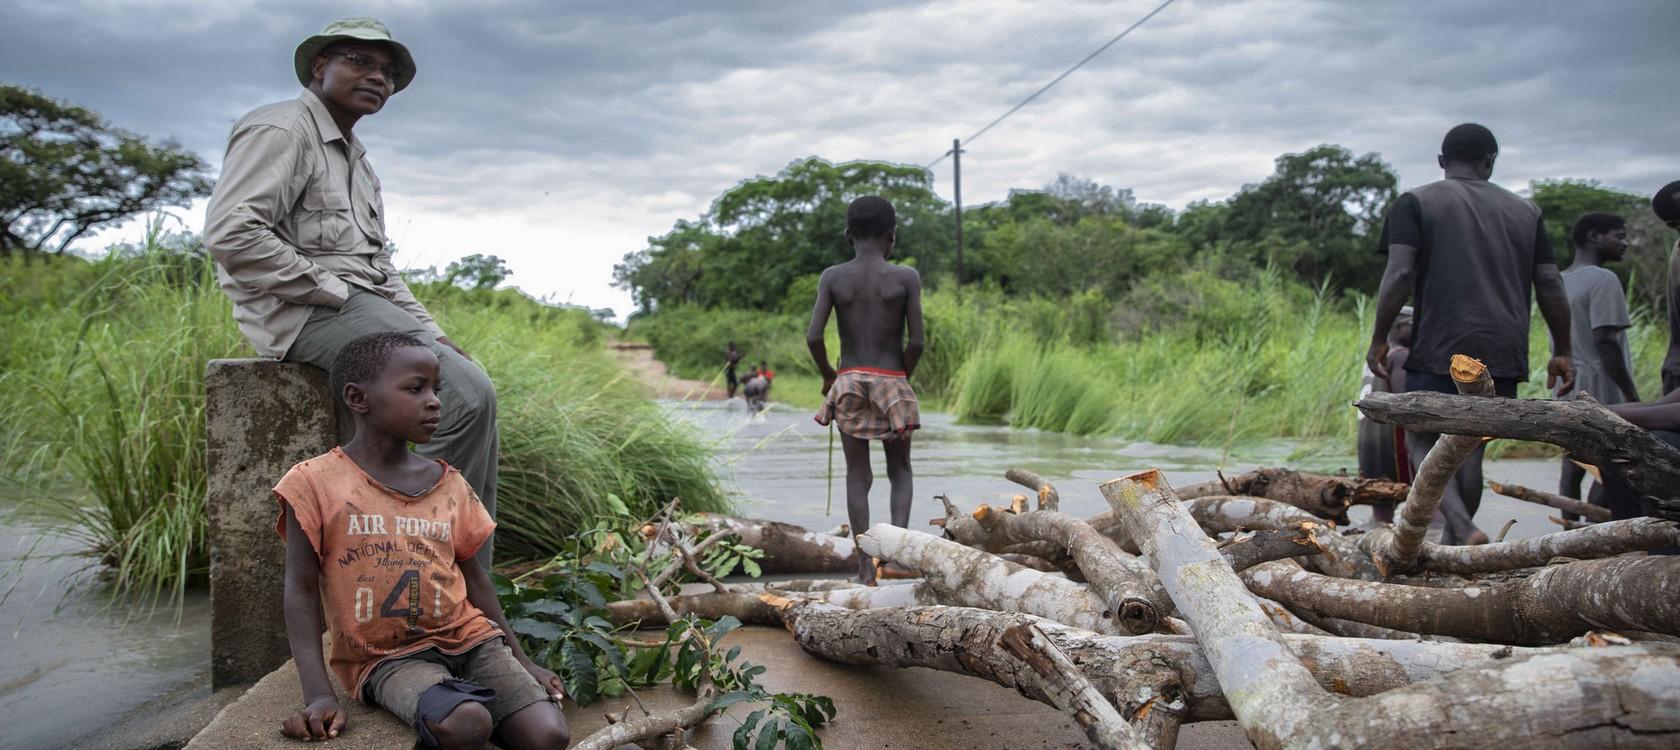 Route inondée au Mozambique © Oliver Petrie - Momentum Production / AFD